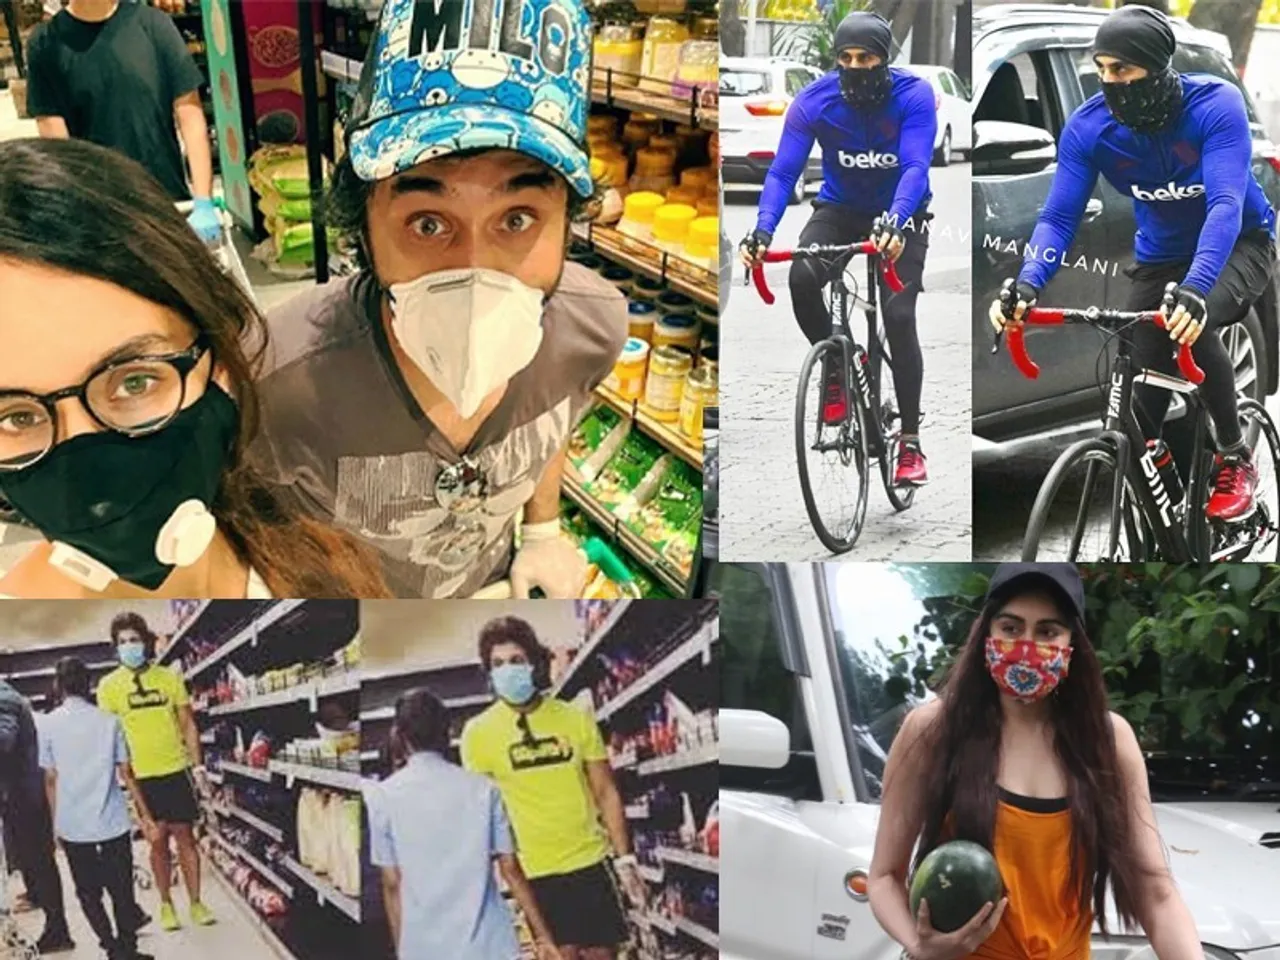 लॉकडाउन में मास्क लगाकर आम लोगों की तरह सब्जियां-राशन खरीदते और साइकिल चलाते दिखे ये स्टार्स , पहचान नहीं पाए लोग